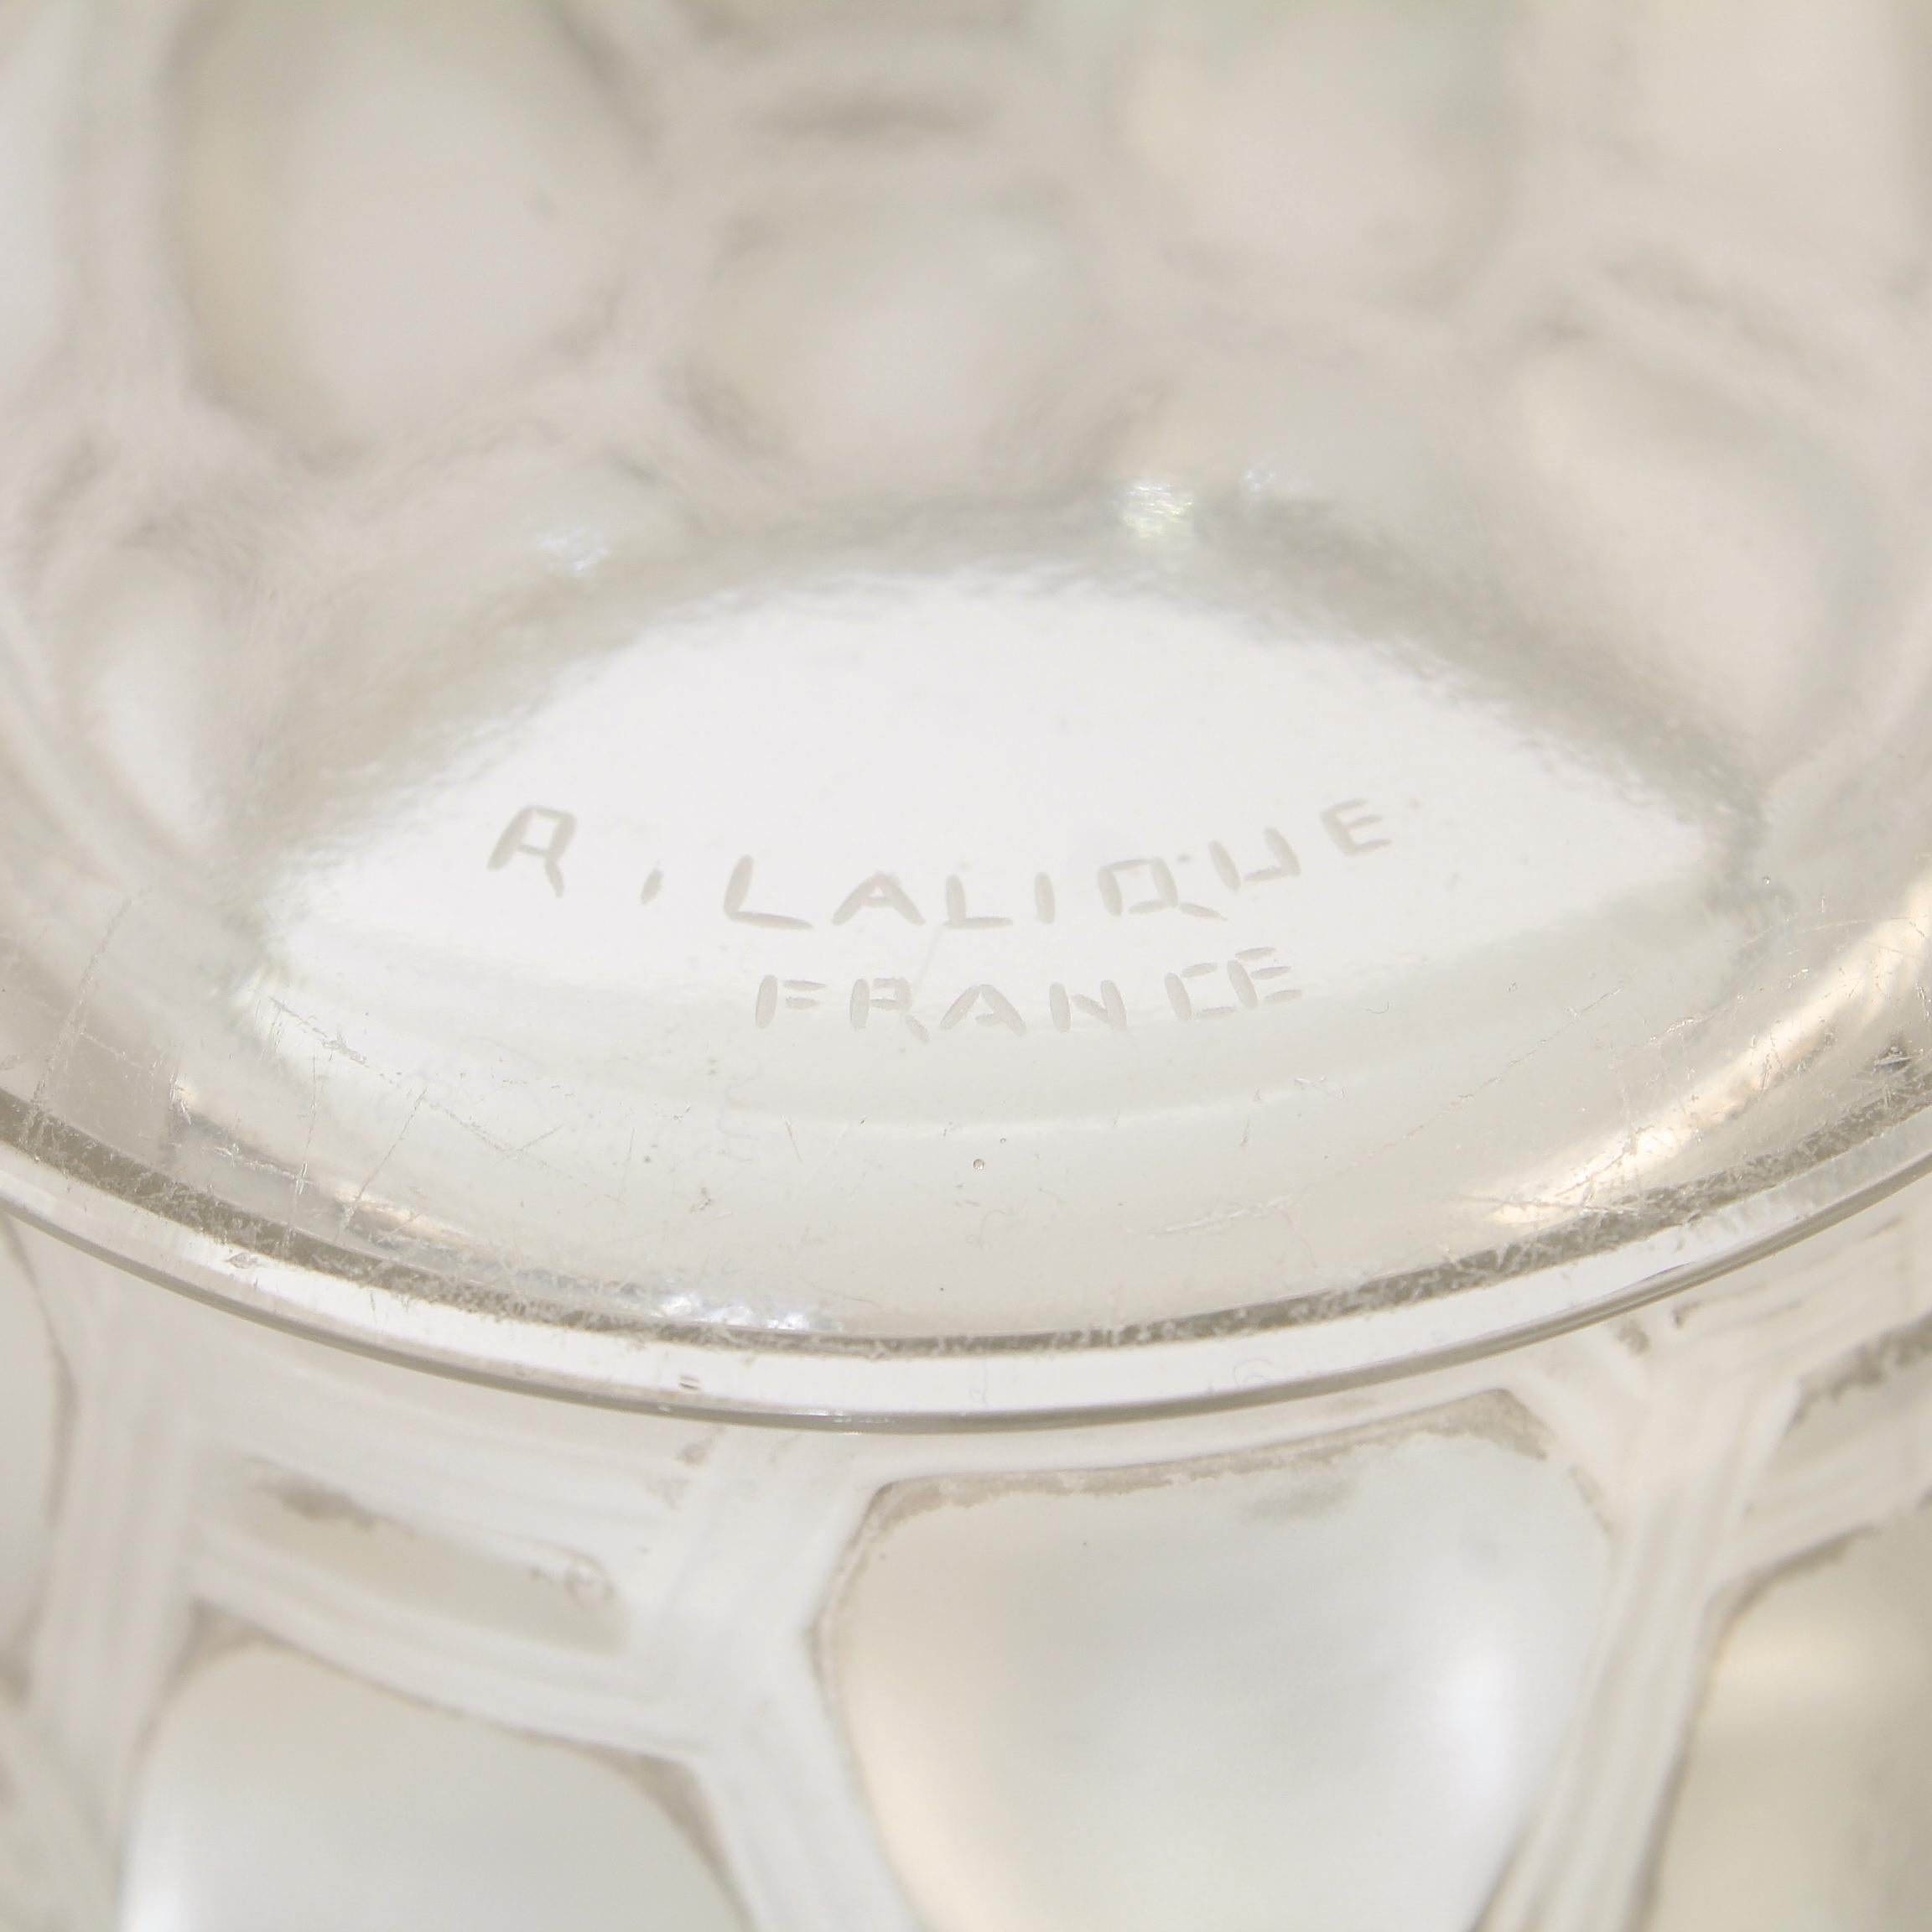 Signed Rene Lalique Art Deco Period Beautreillis Art Glass Vase 7